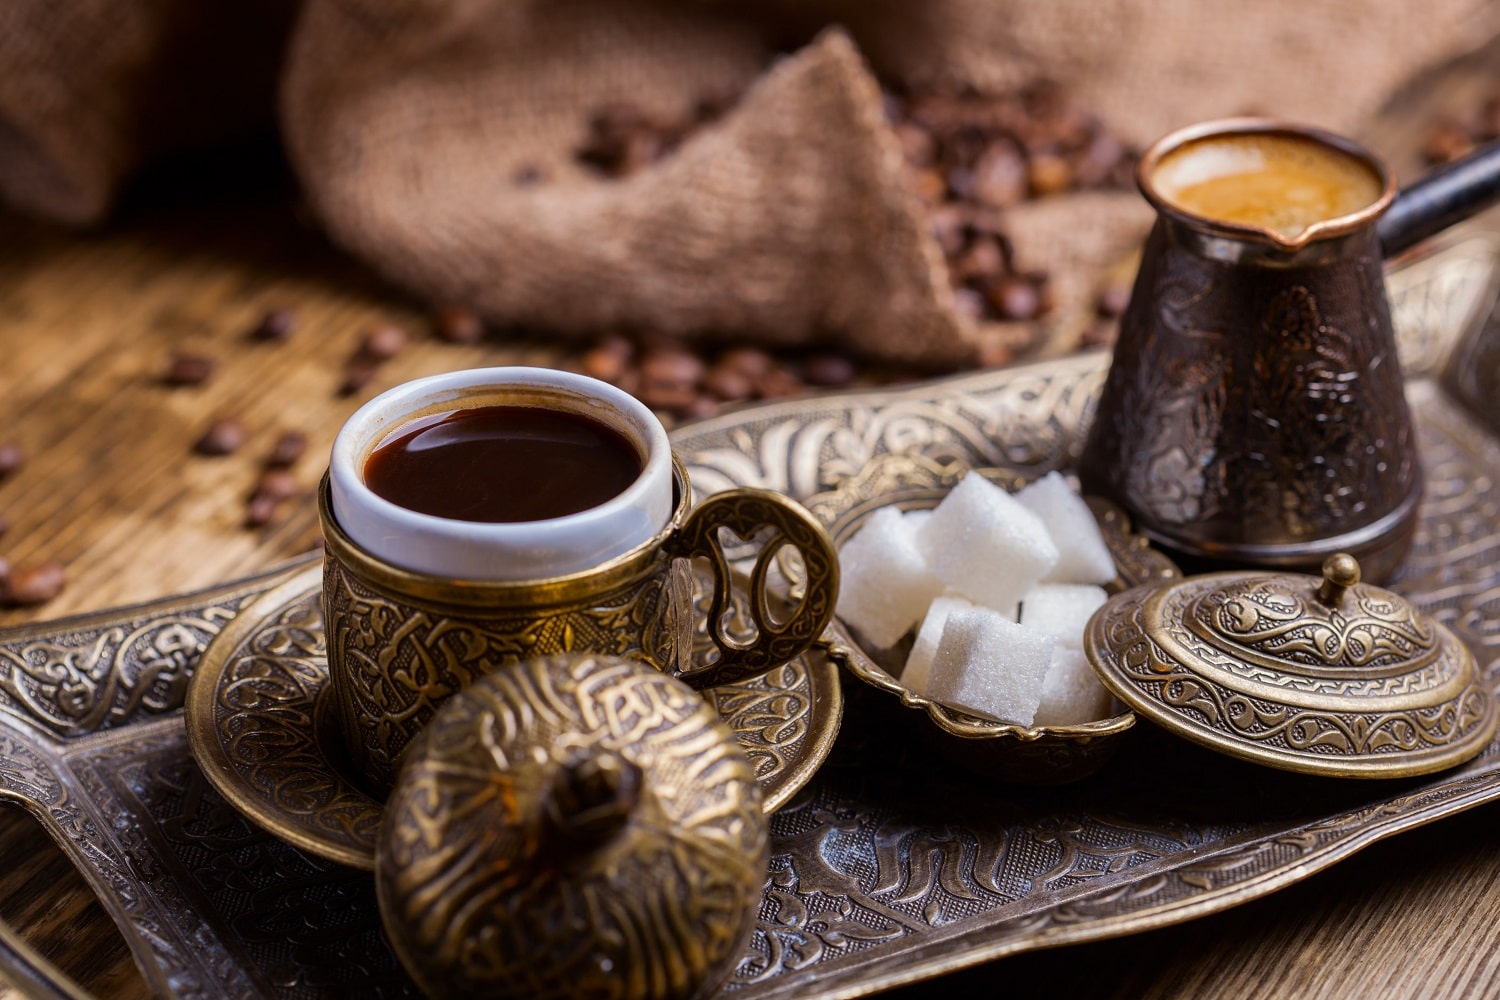 cà phê thổ nhĩ kỳ – turkish coffee: kỳ lạ ly cafe vô tận pha trên cát nóng